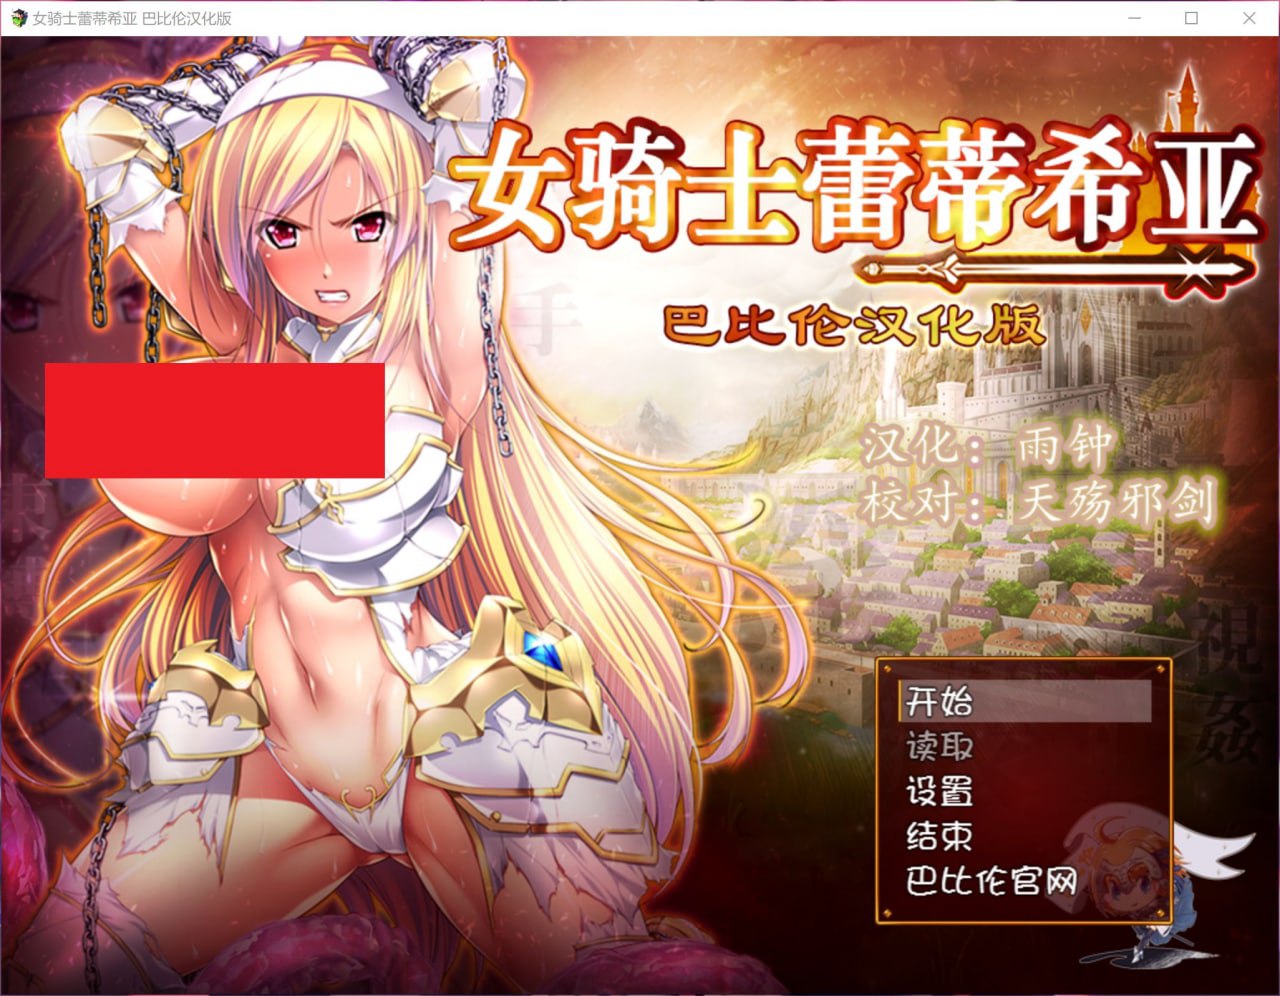 【大型RPG/汉化】女骑士蕾蒂西亚 V1.03 精修完整汉化修复版+全CG【新汉化/全CV/2.3G】